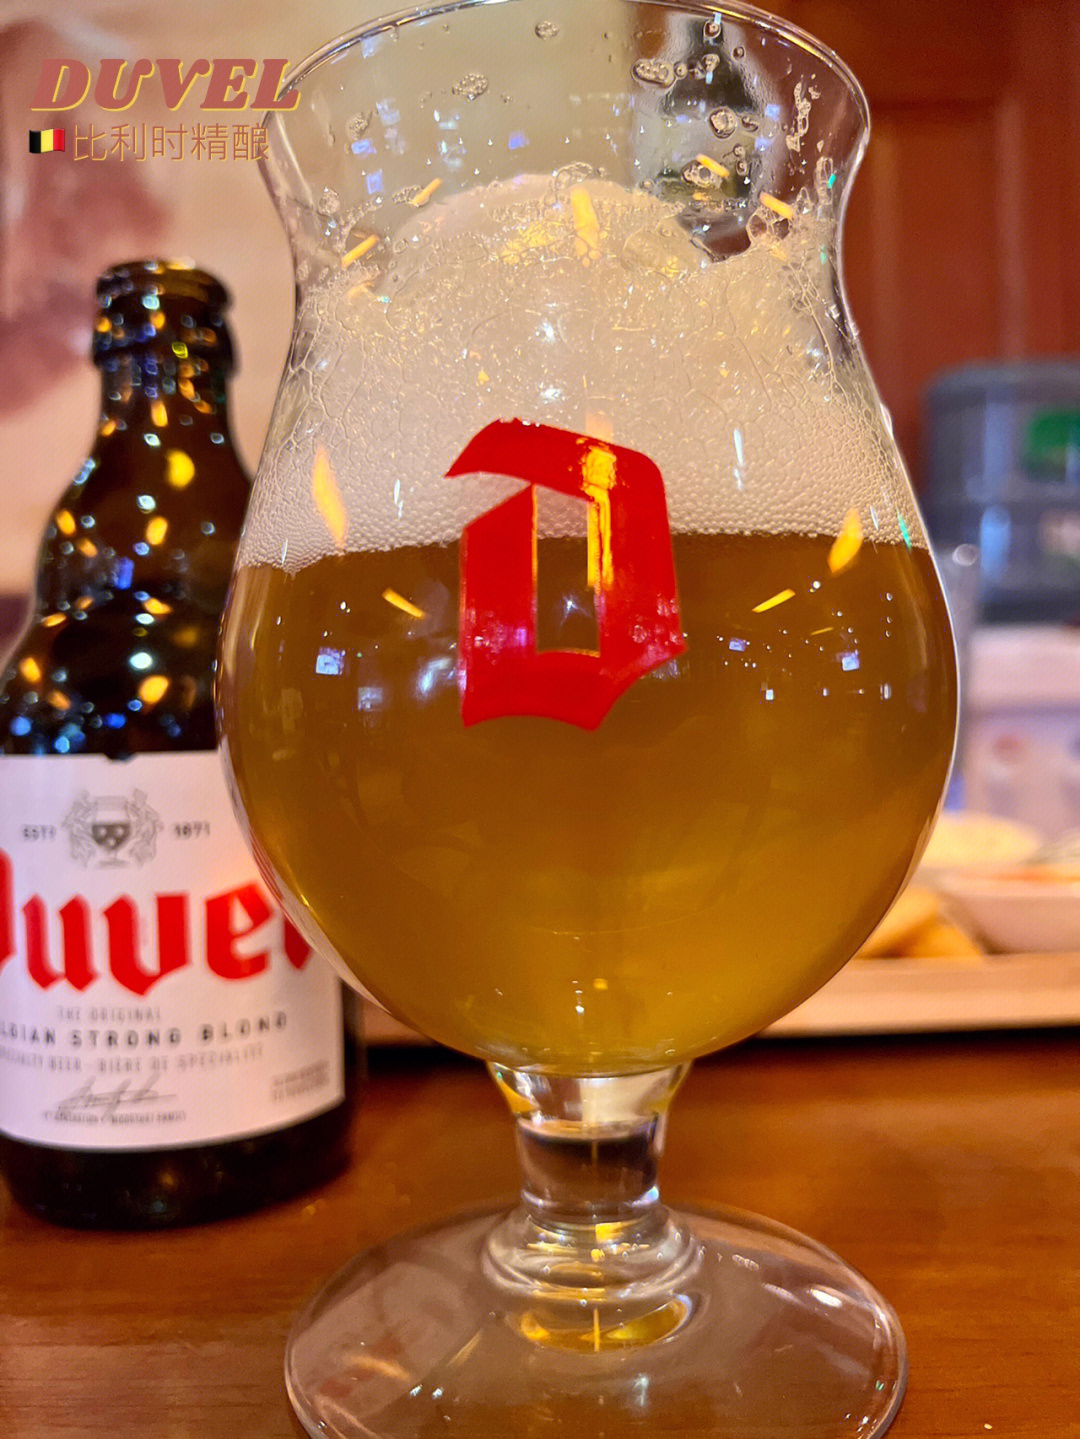 昆明好啤酒来自比利时的duvel